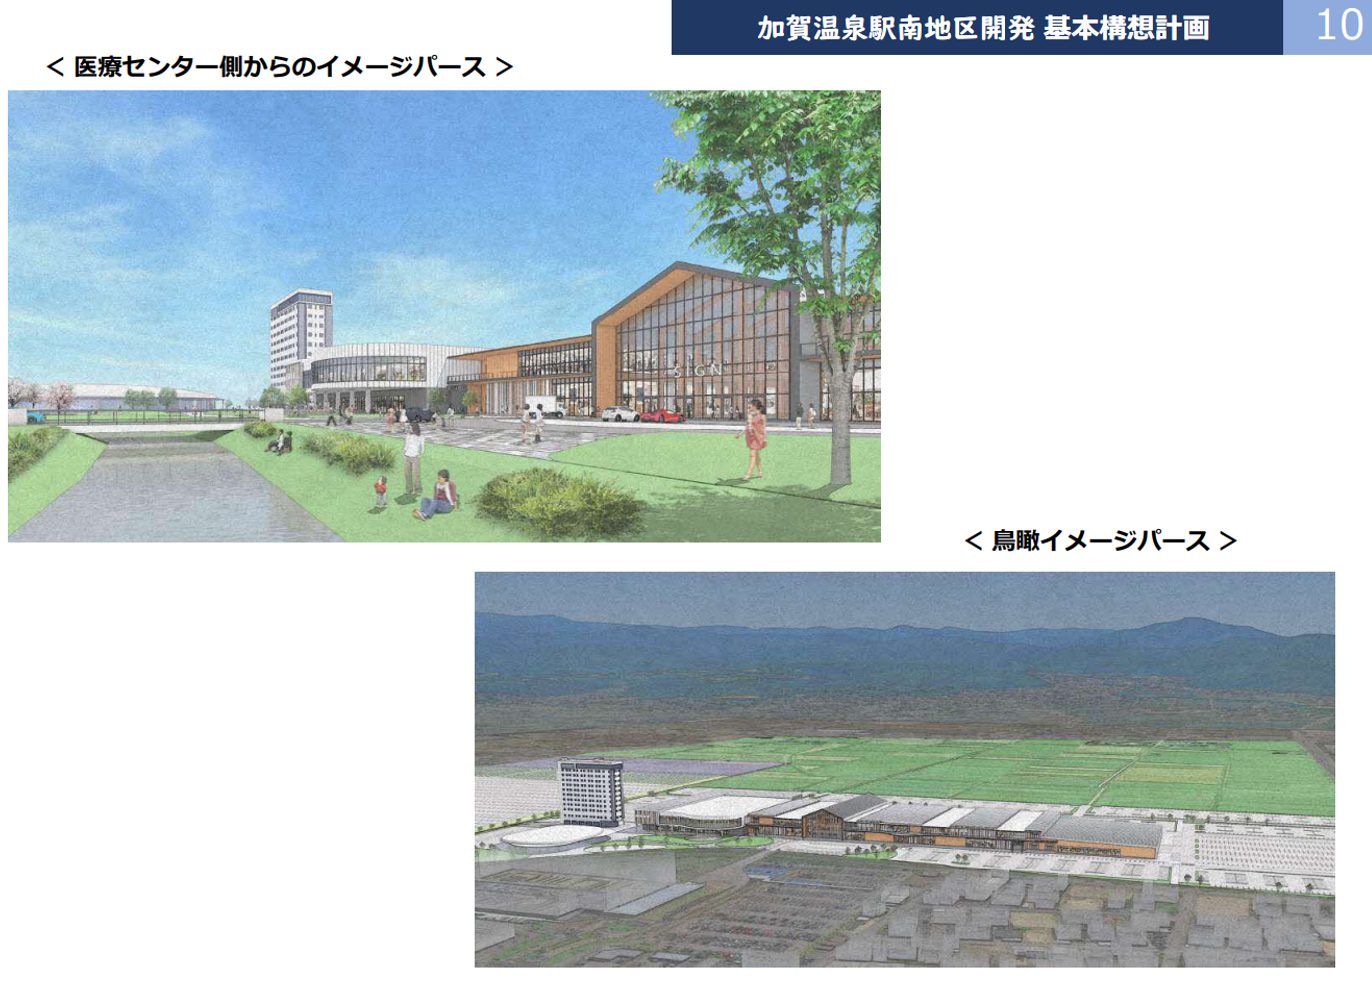 加賀温泉駅南側、2028年度にアウトレットモールやショッピングセンター、ホテルなどの複合施設／人が集まる拠点に